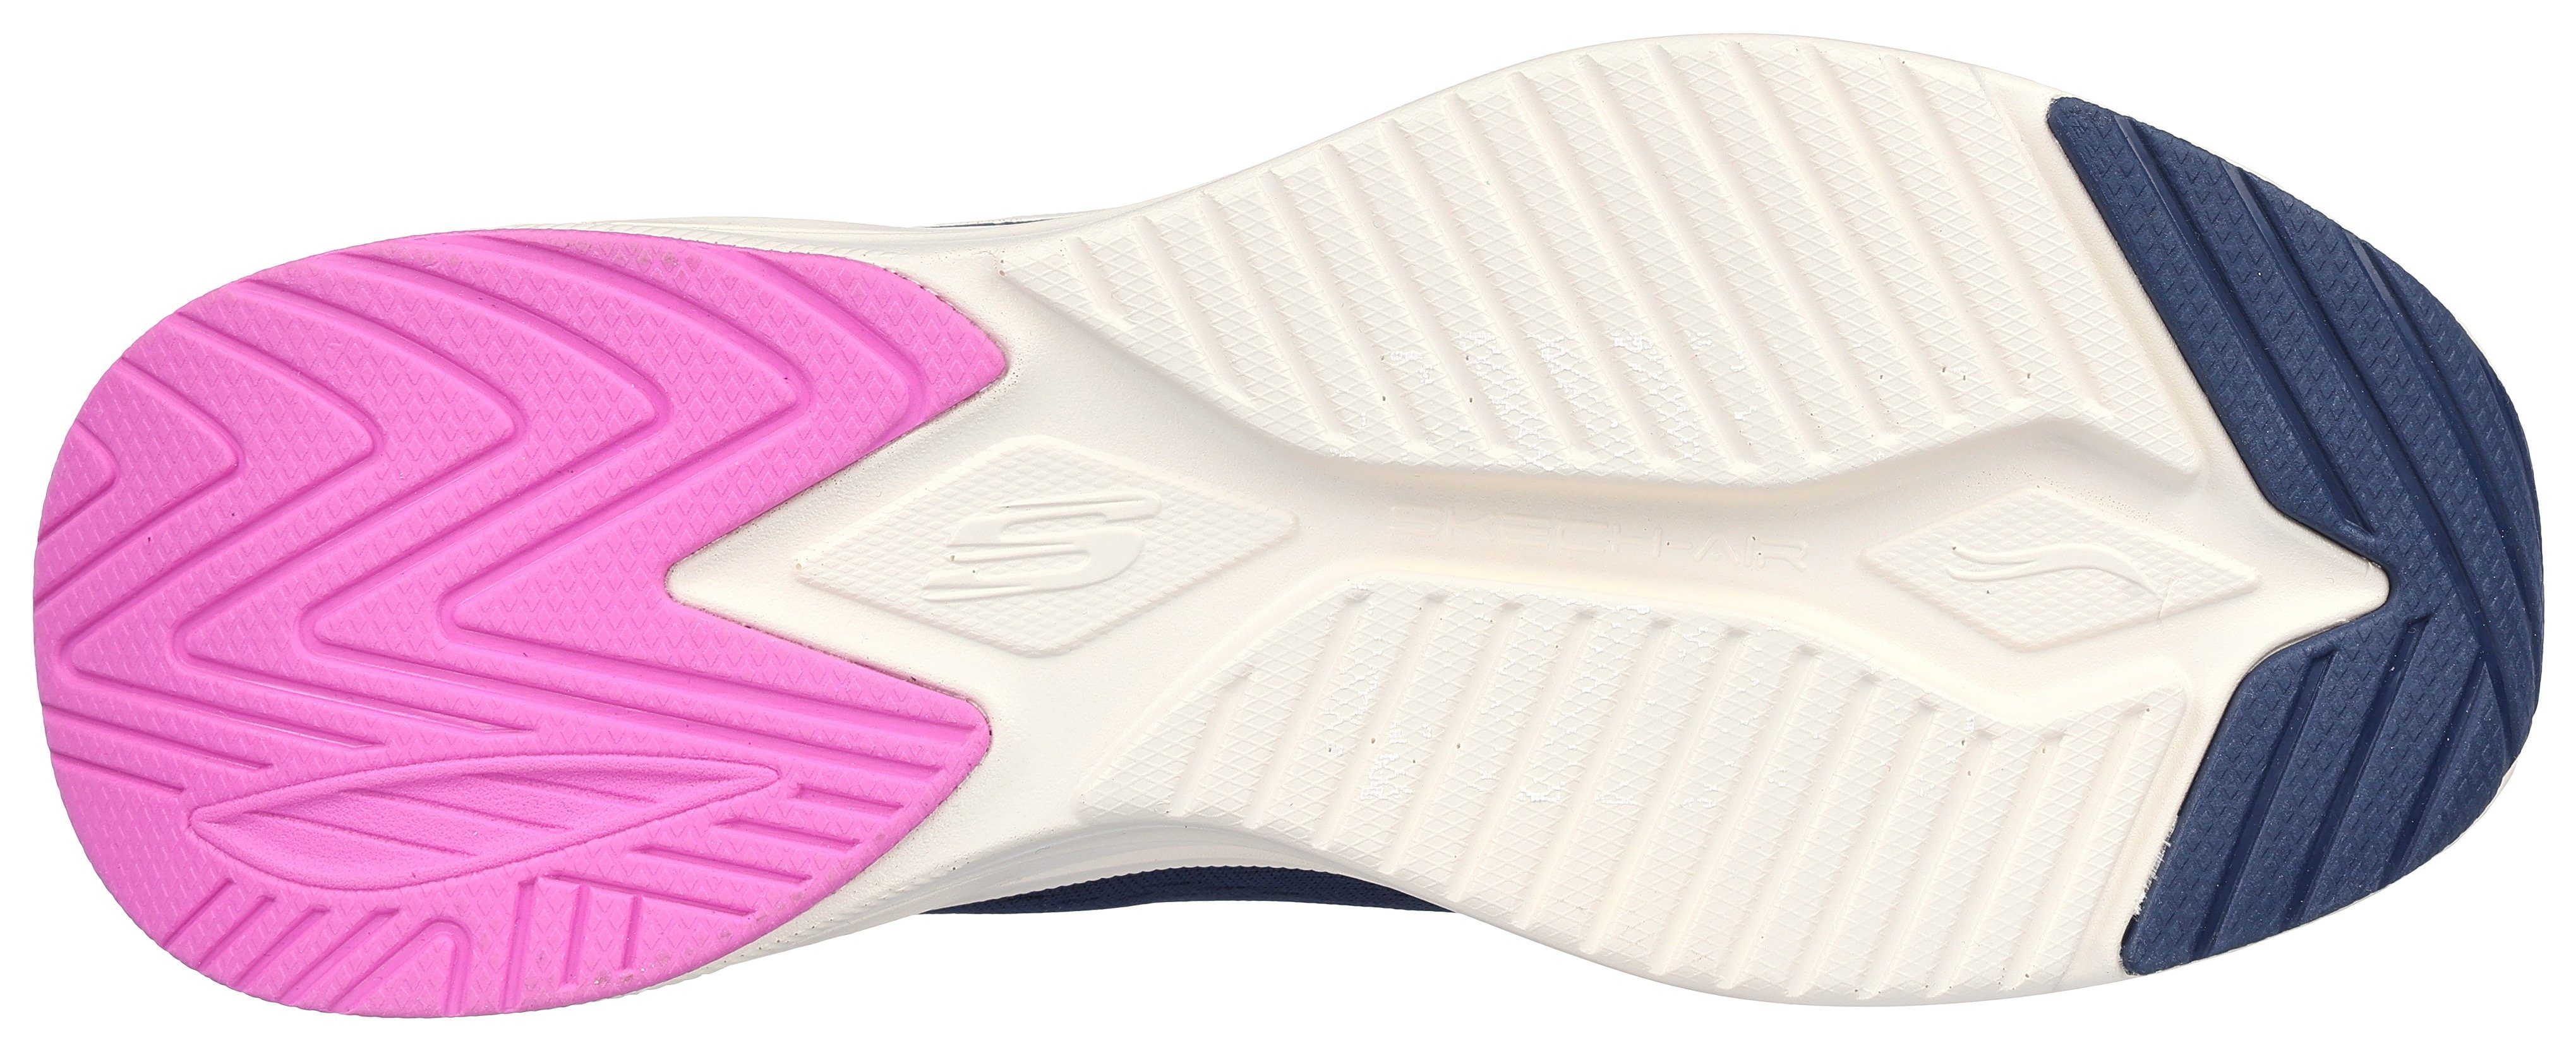 navy-fliederfarben Sneaker SKECH-AIR Maschinenwäsche META- Skechers geeignet für